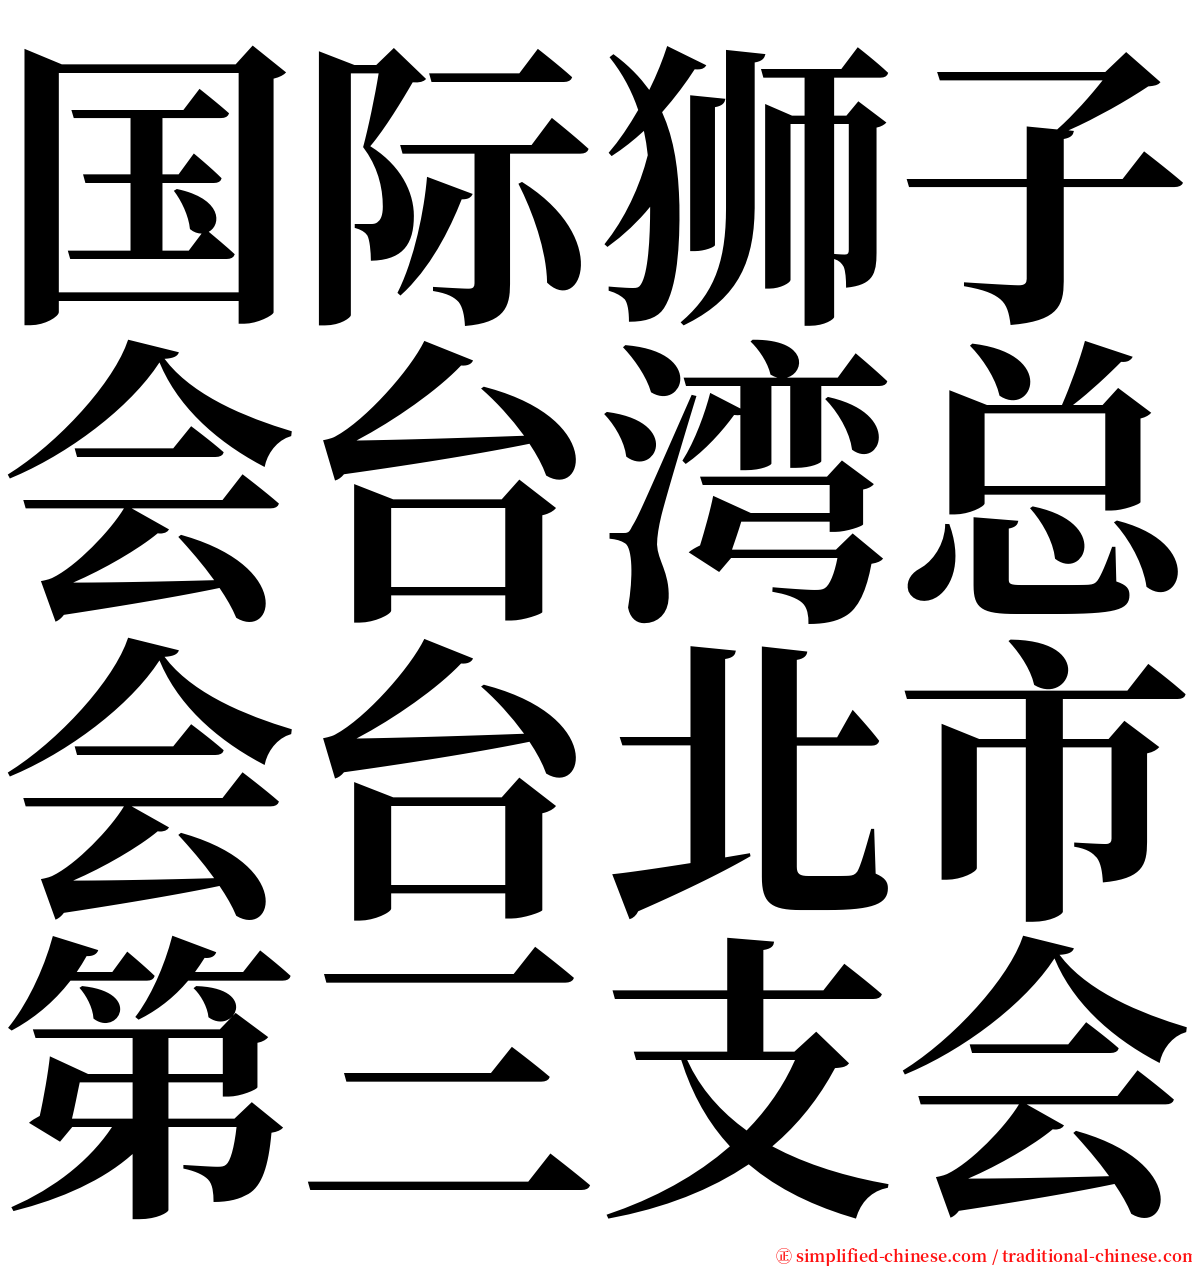 国际狮子会台湾总会台北市第三支会 serif font